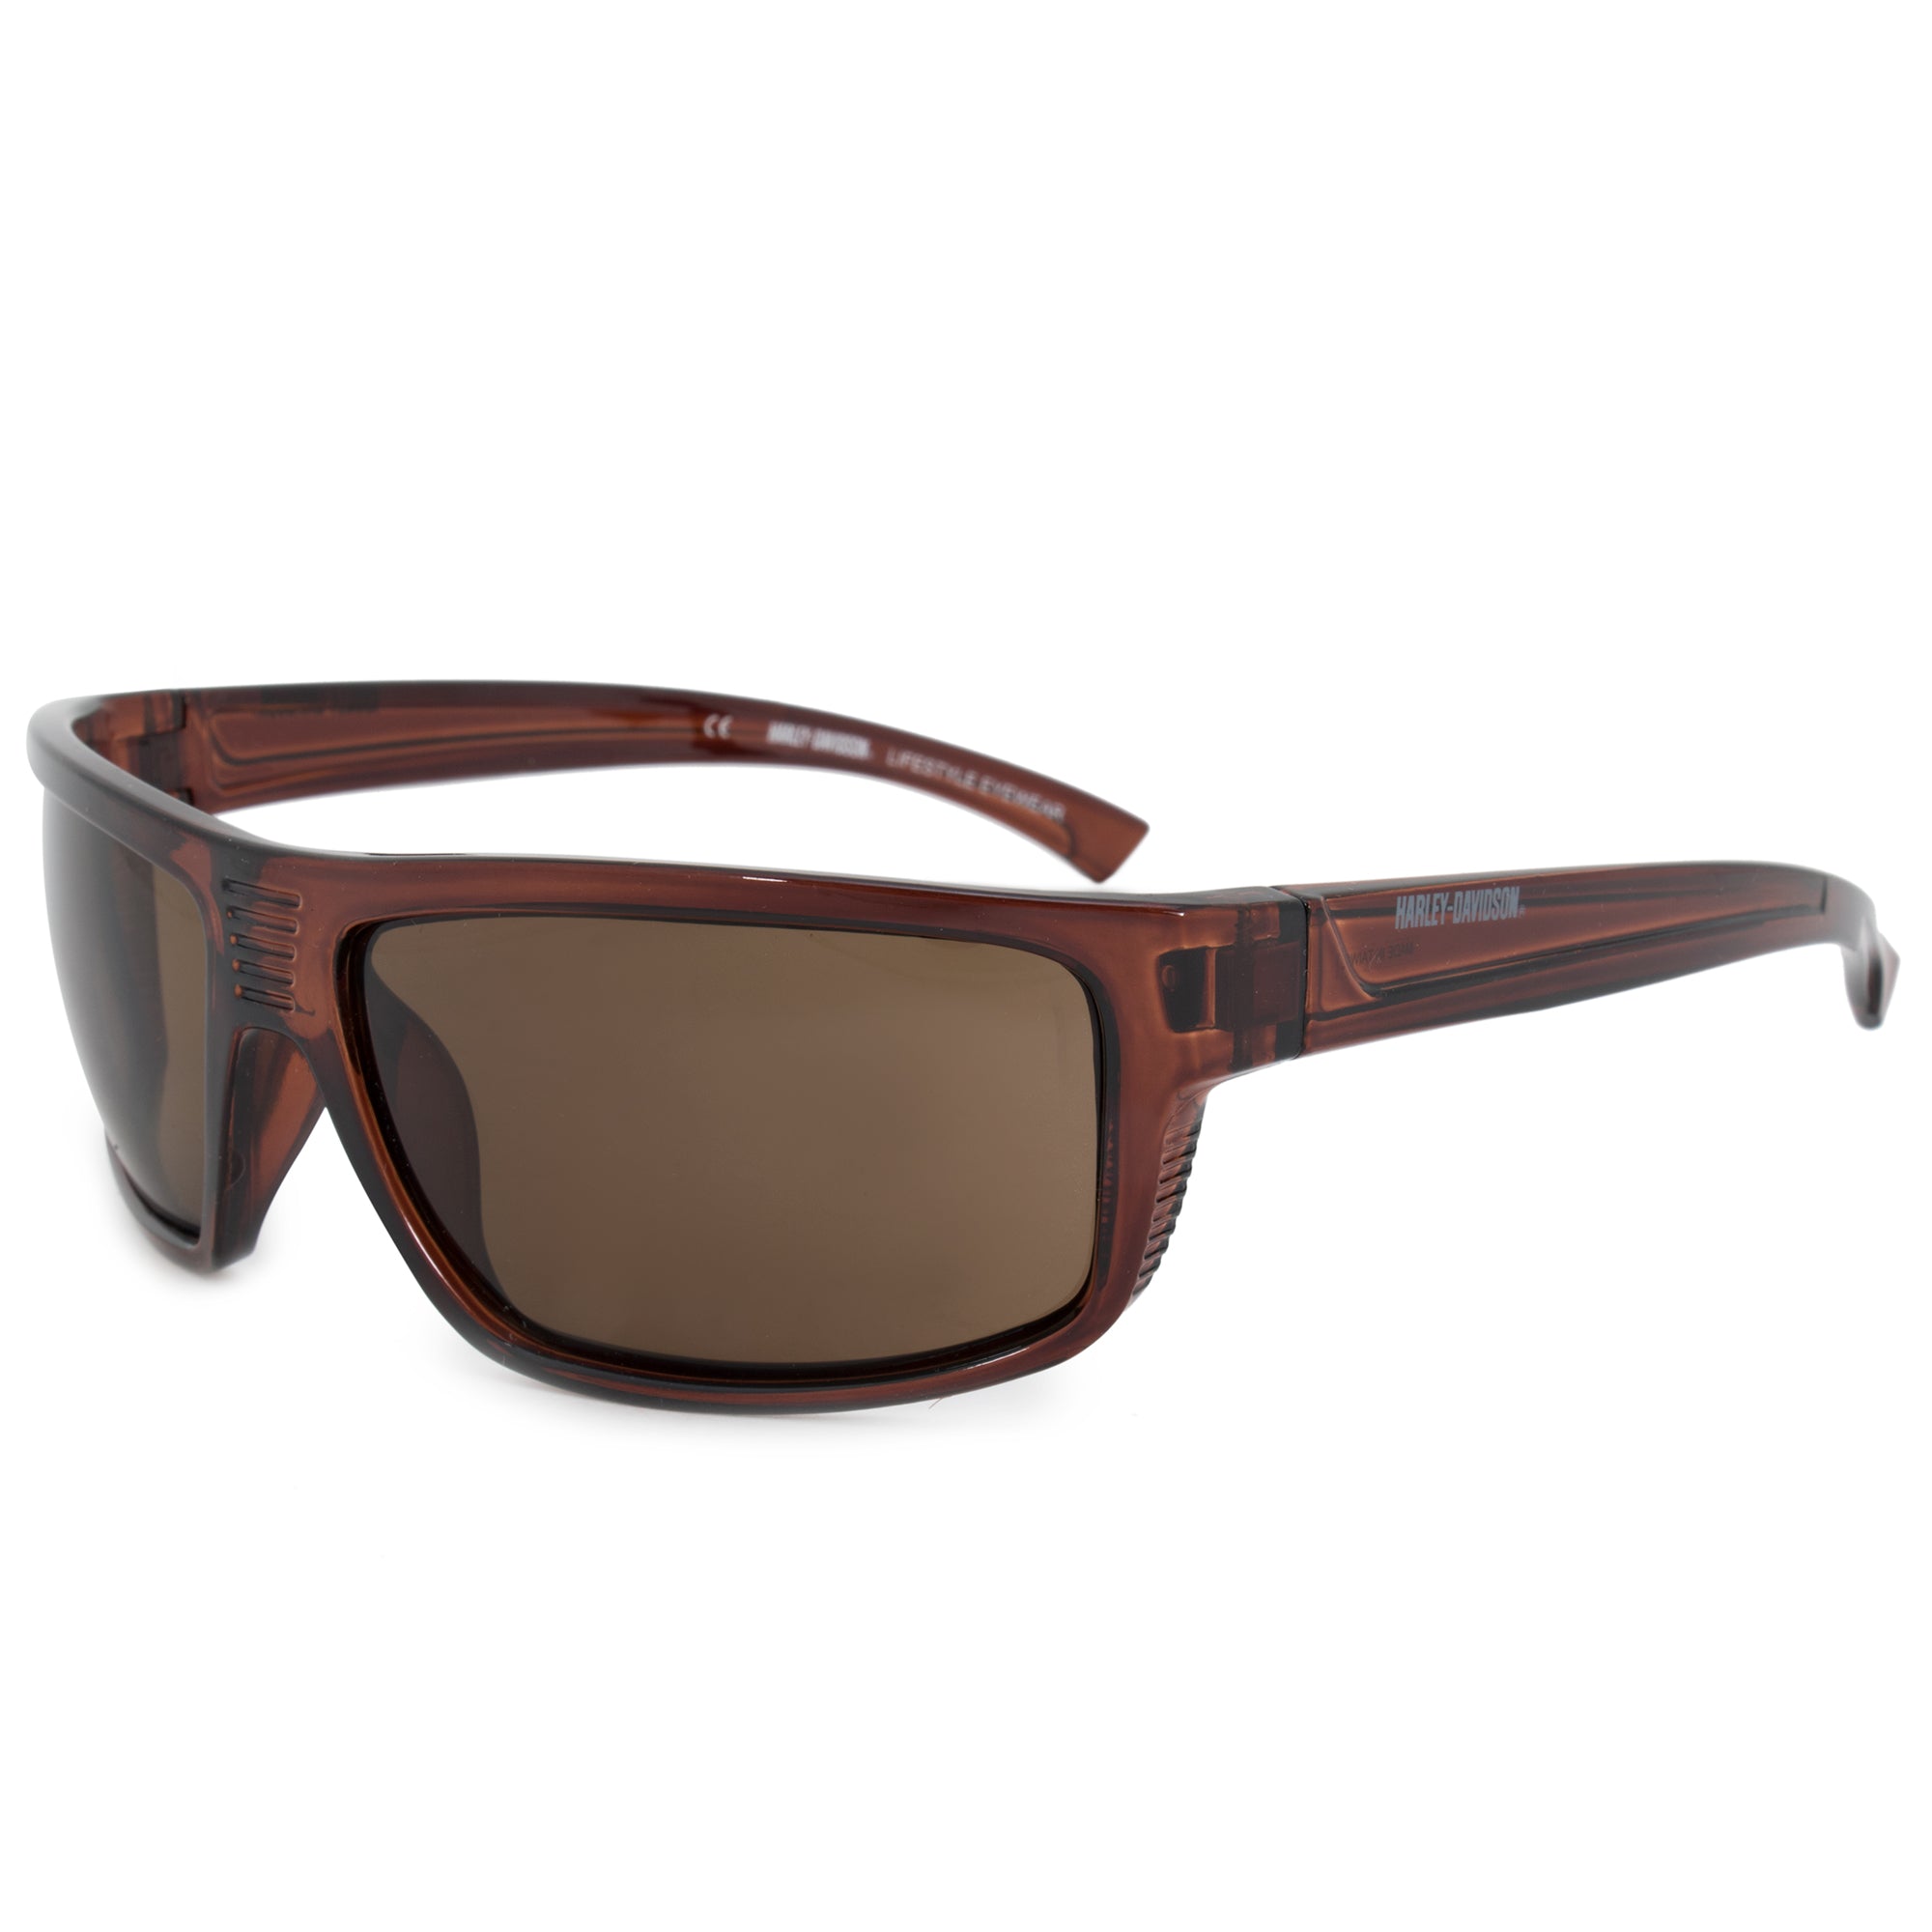 Harley Davidson Sports Sunglasses HDV0110 48E 62